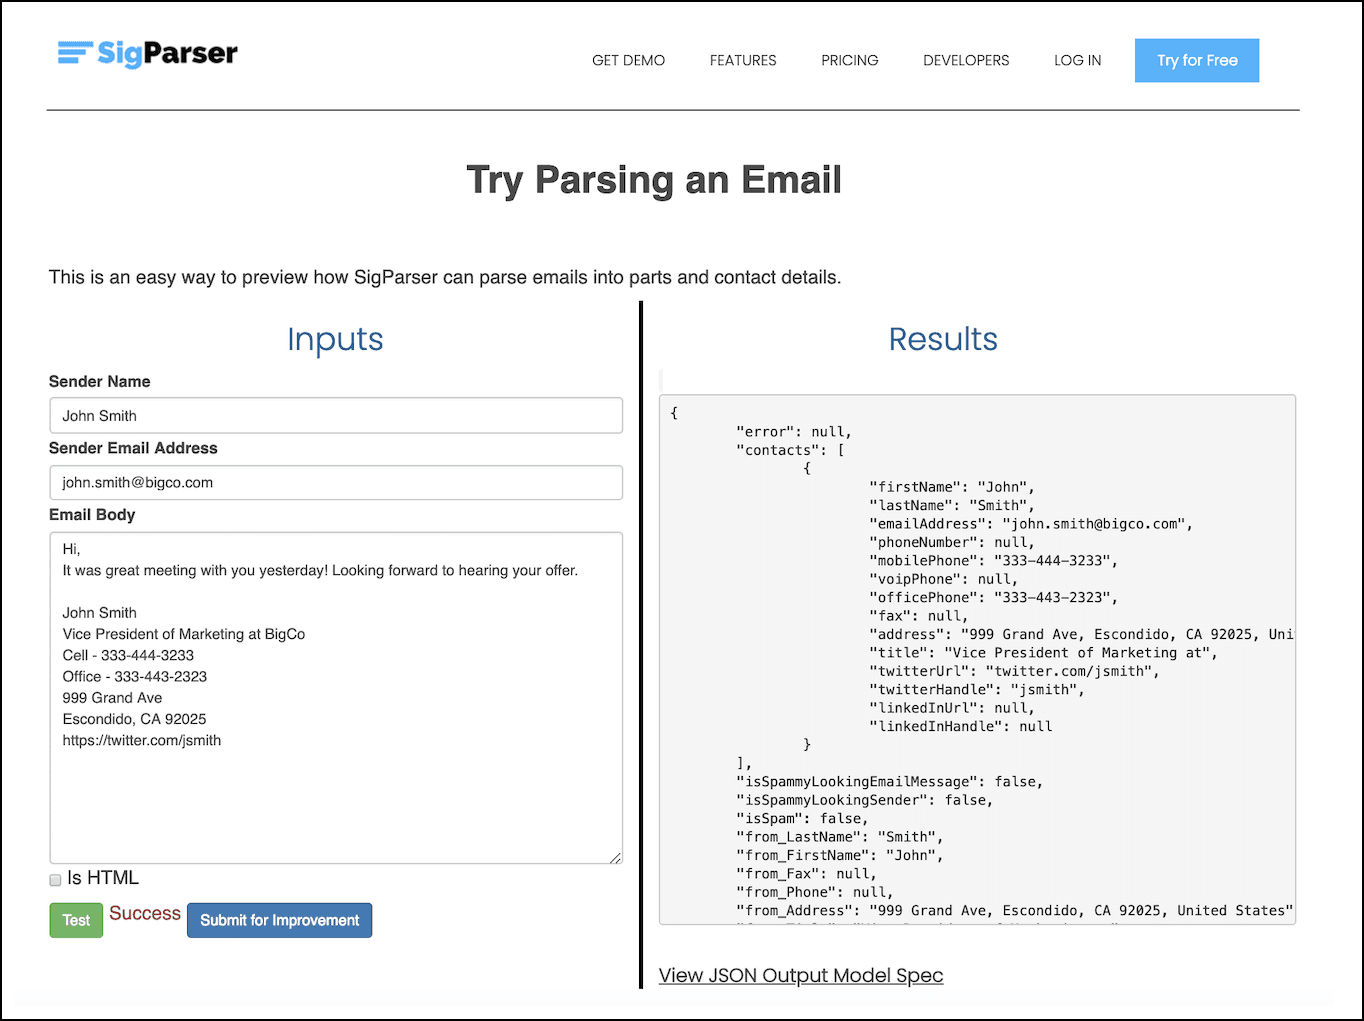 O aplicativo SigParser permite que você forneça um email de exemplo e visualize os metadados que ele pode determinar sobre o email.